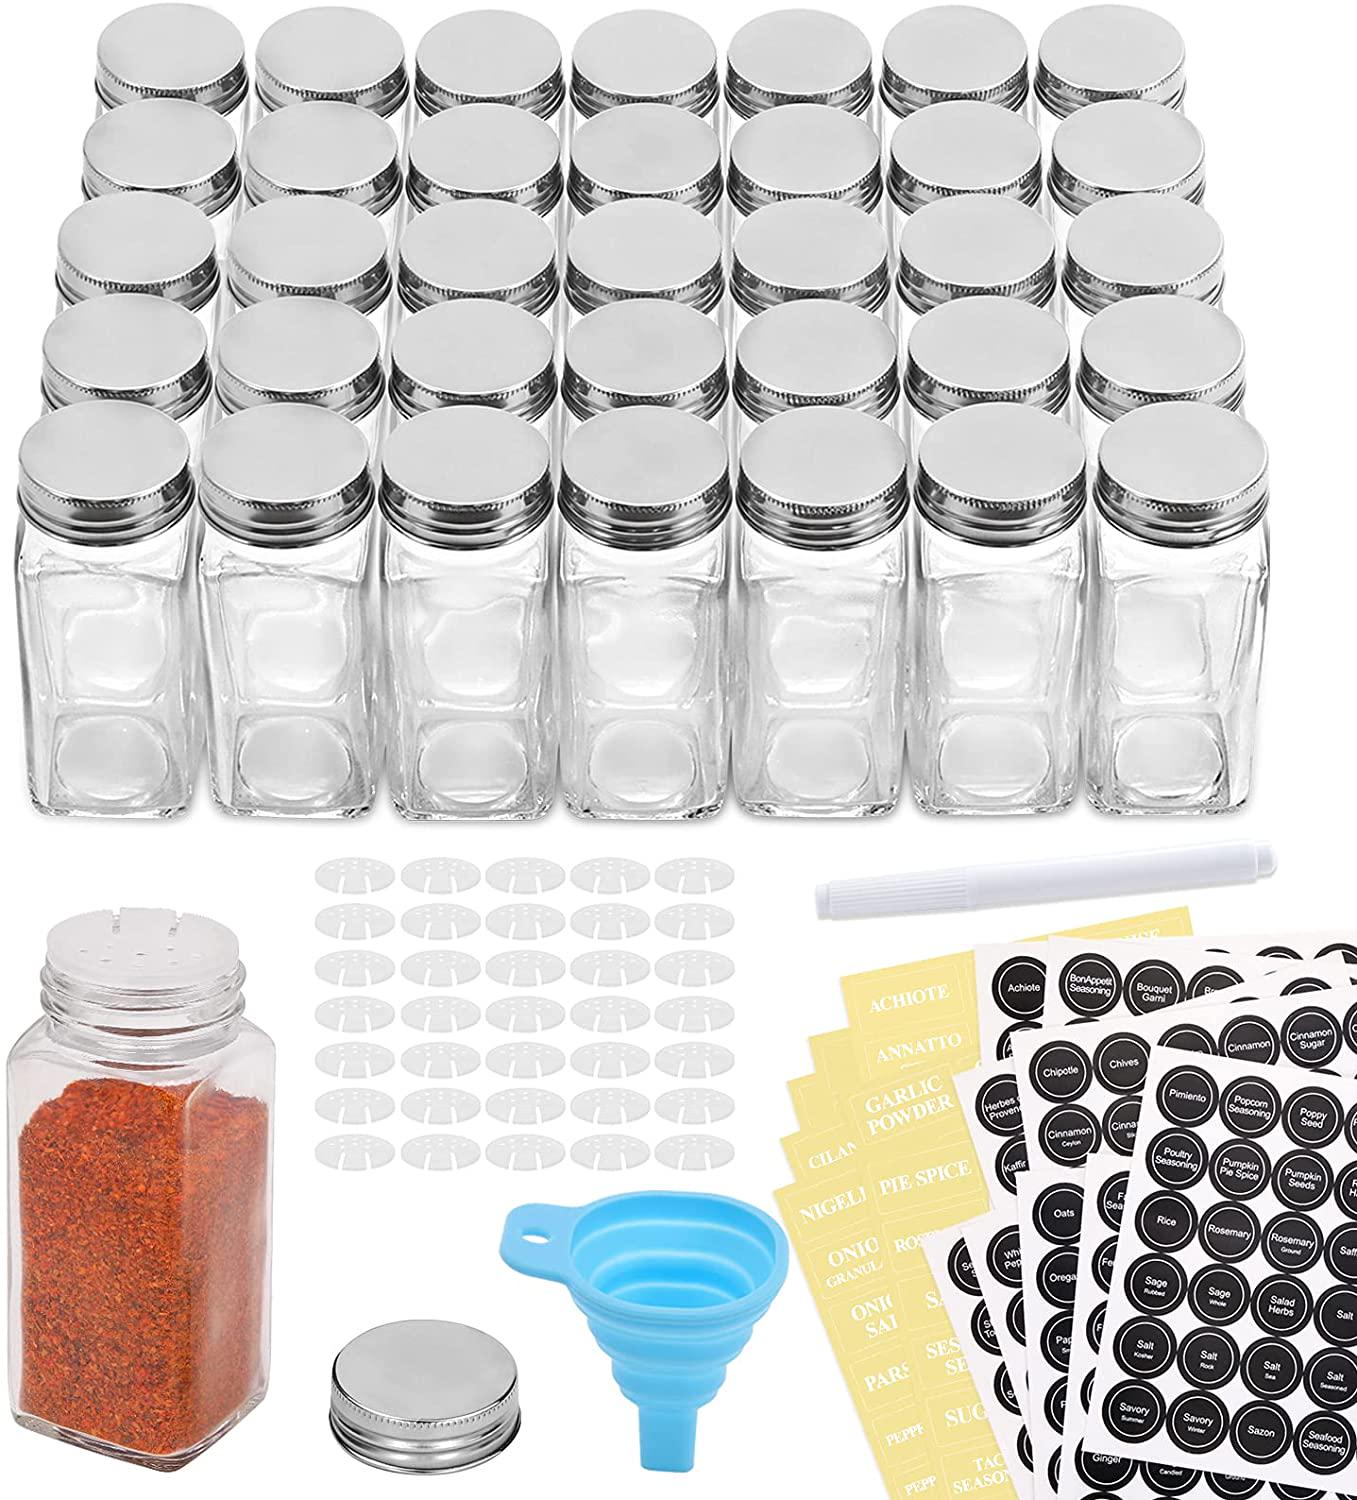 Aozita 14 Pcs Glass Spice Jars with Spice Labels - 6Oz Empty